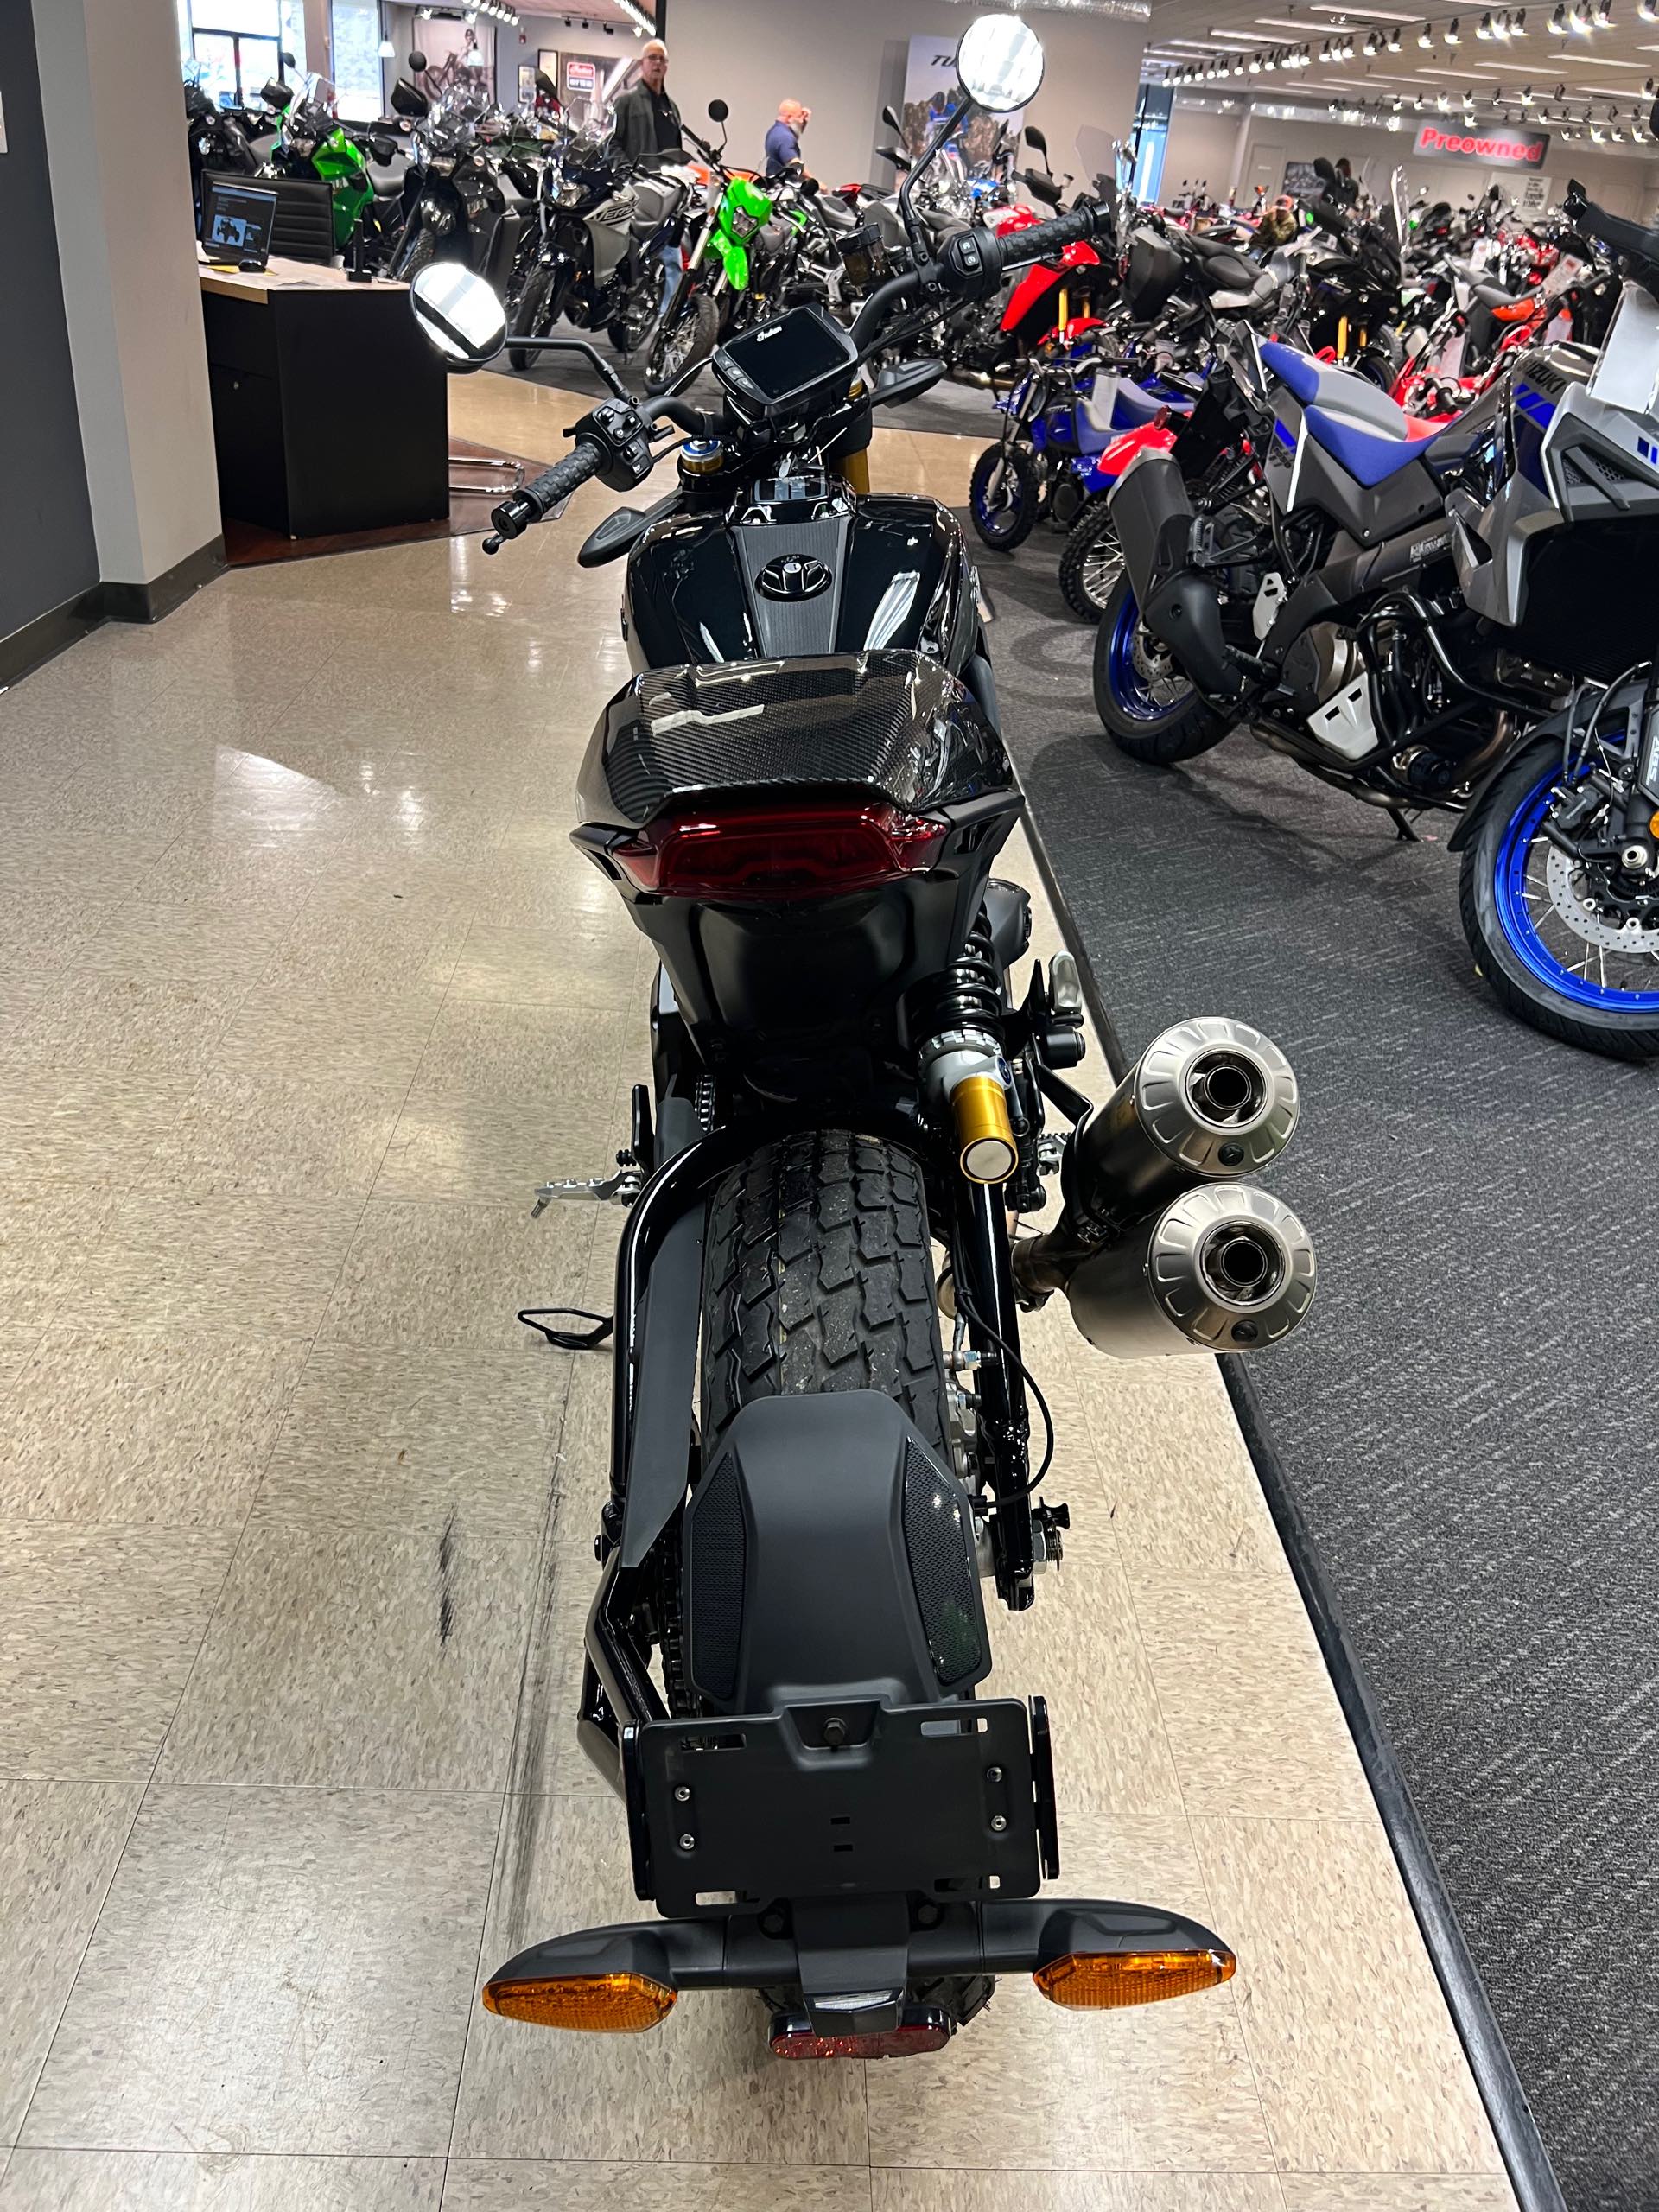 2019 Indian FTR 1200 S at Sloans Motorcycle ATV, Murfreesboro, TN, 37129